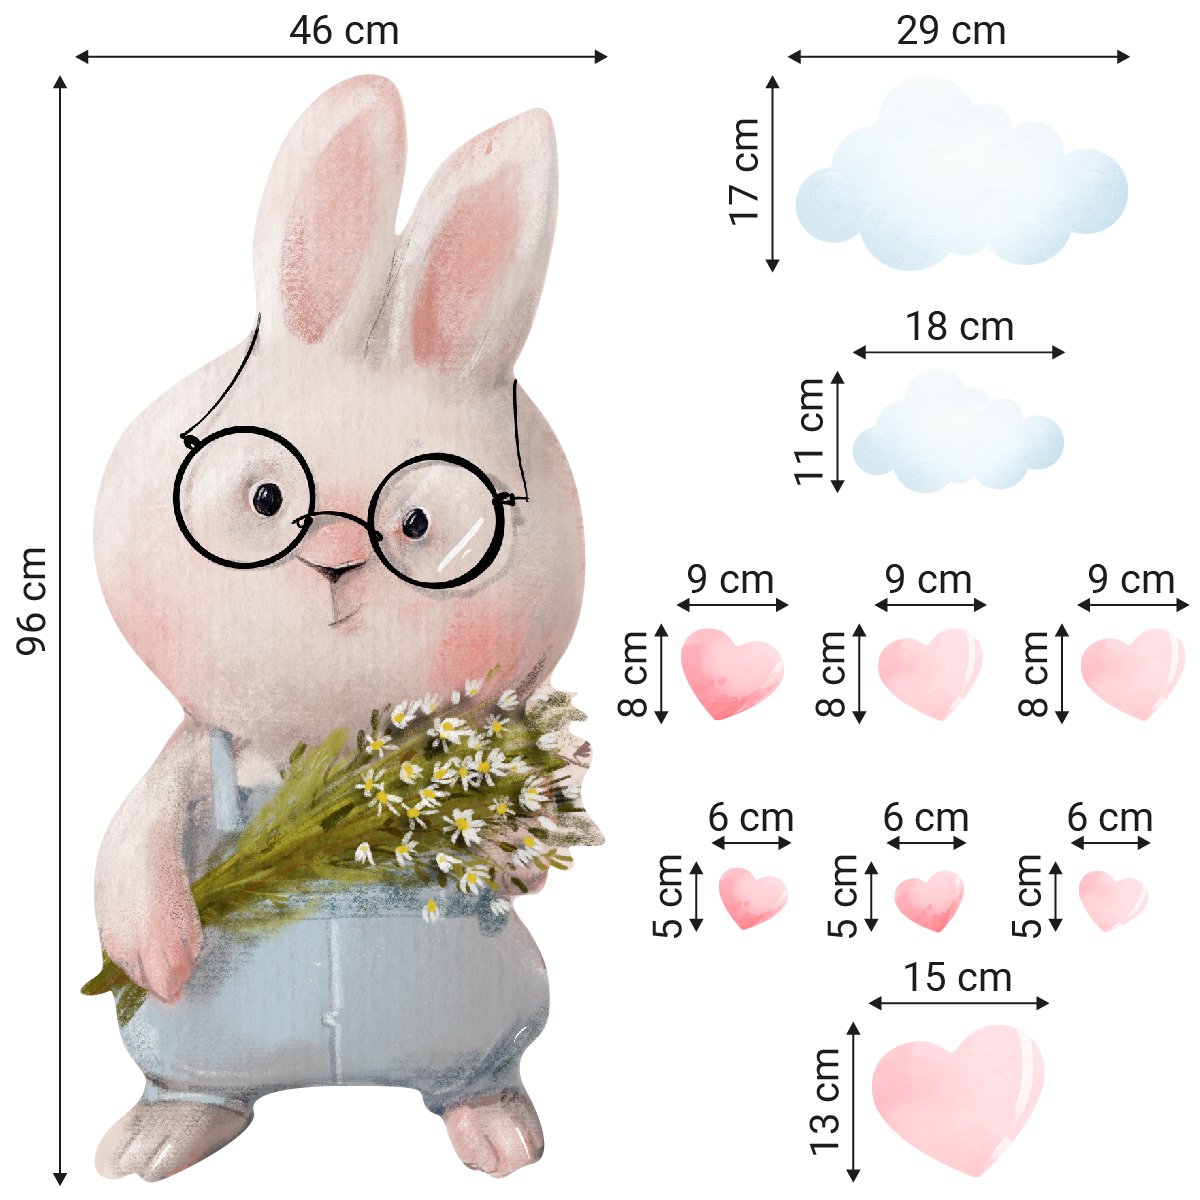 Kolorowa naklejka na ścianę dla dziecka króliczek w okularach, chmurki i serduszka